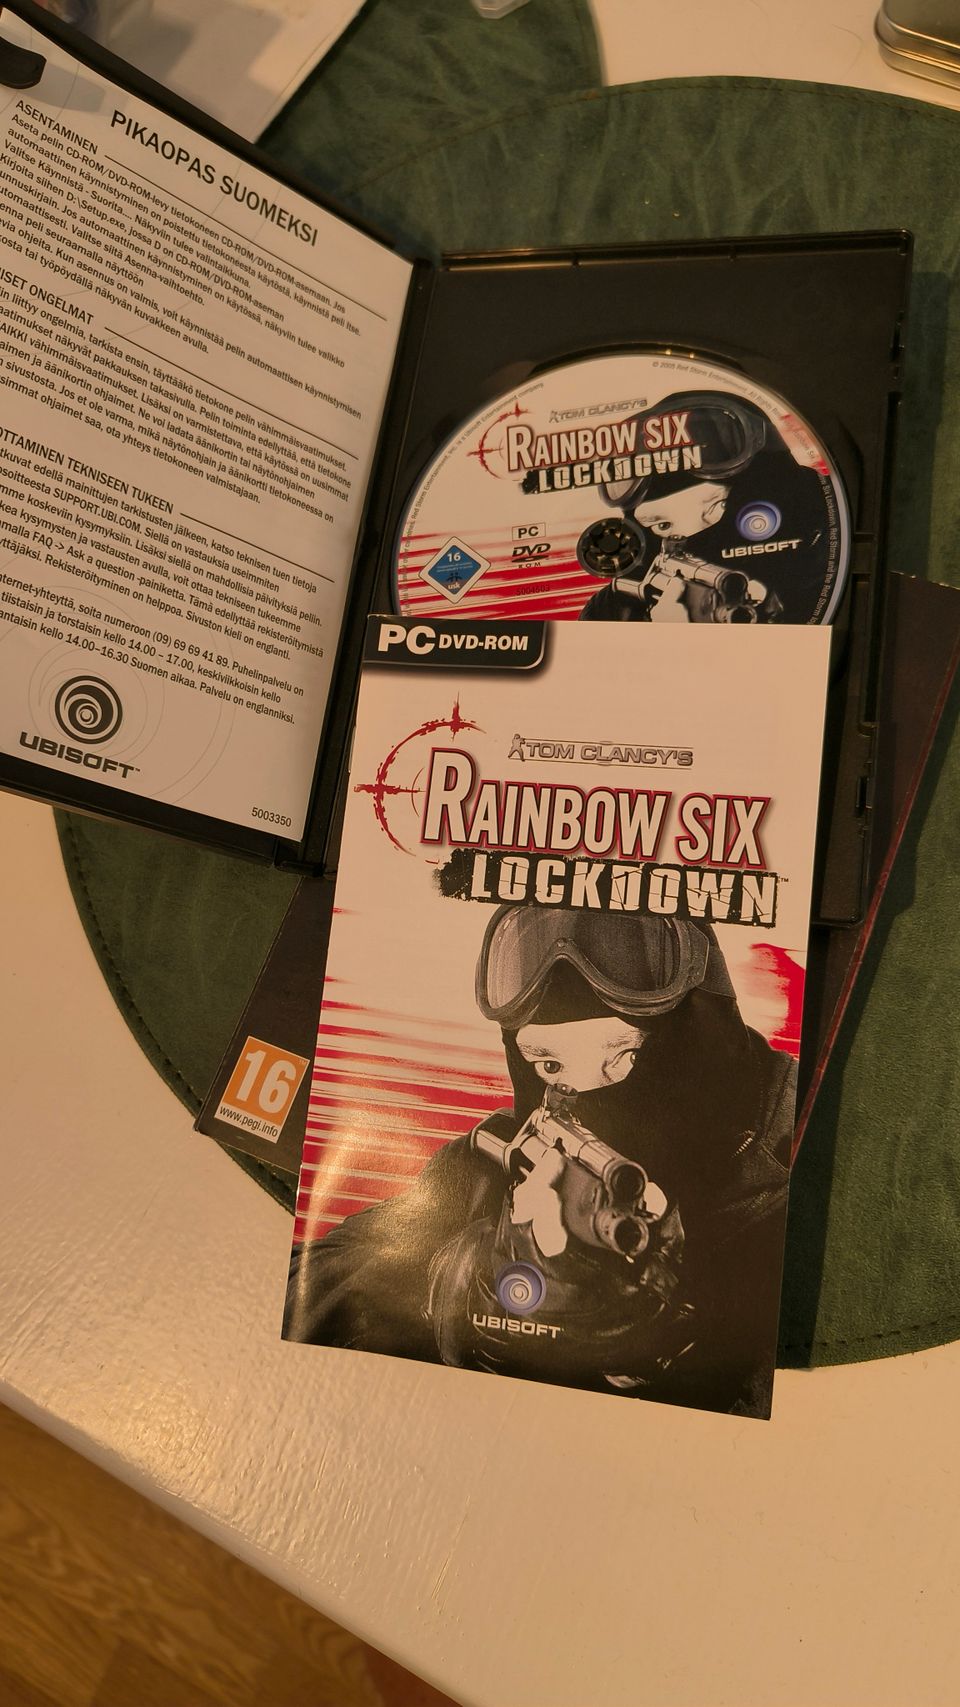 PC: Tom Clancy's Rainbow Six Lockdown